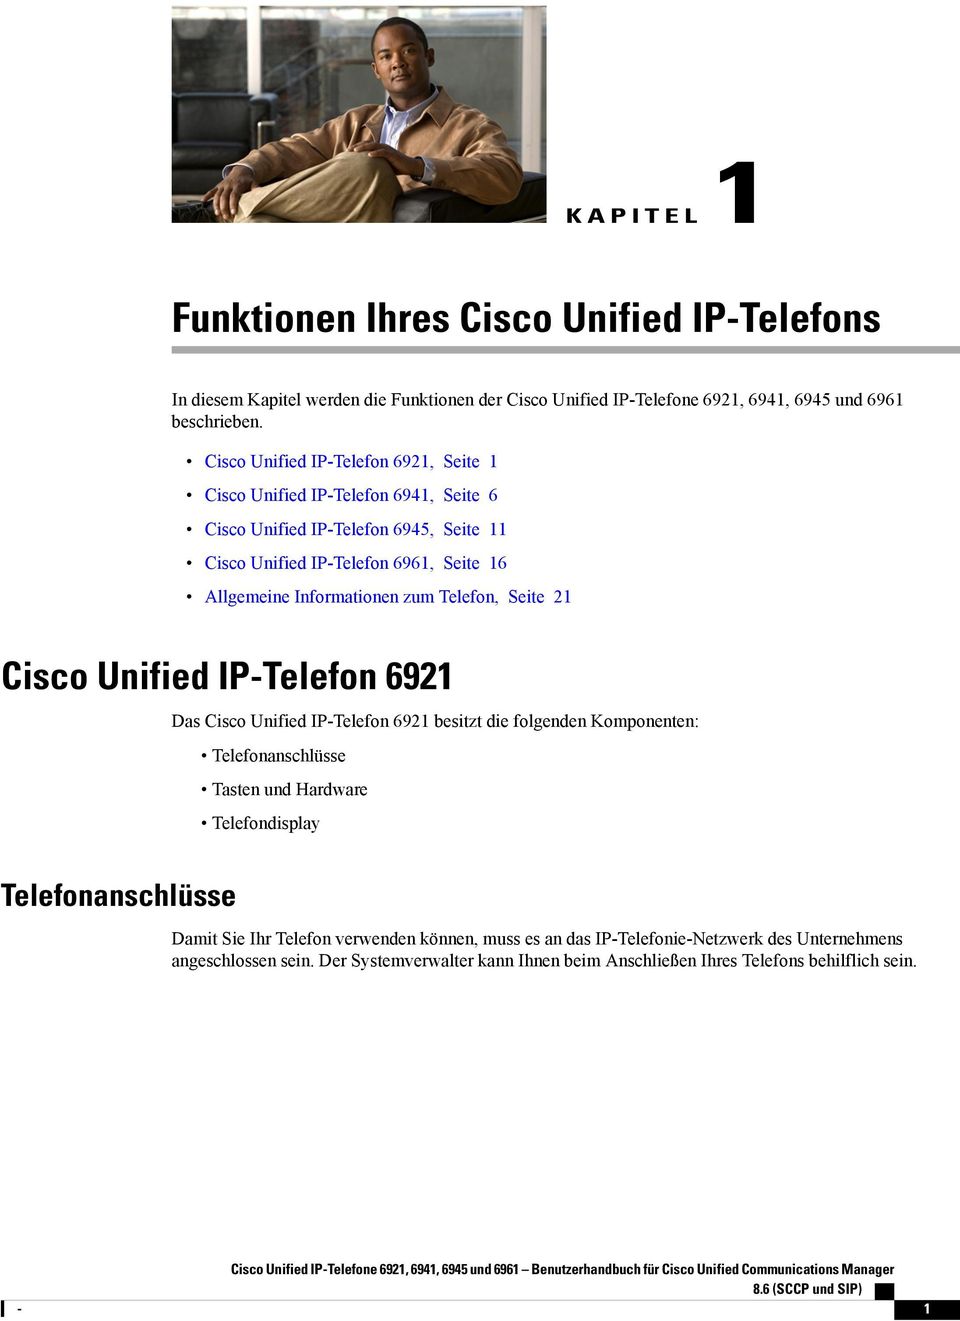 Seite 21 Cisco Unified IP-Telefon 6921 Telefonanschlüsse Das Cisco Unified IP-Telefon 6921 besitzt die folgenden Komponenten: Telefonanschlüsse Tasten und Hardware Telefondisplay Damit Sie Ihr